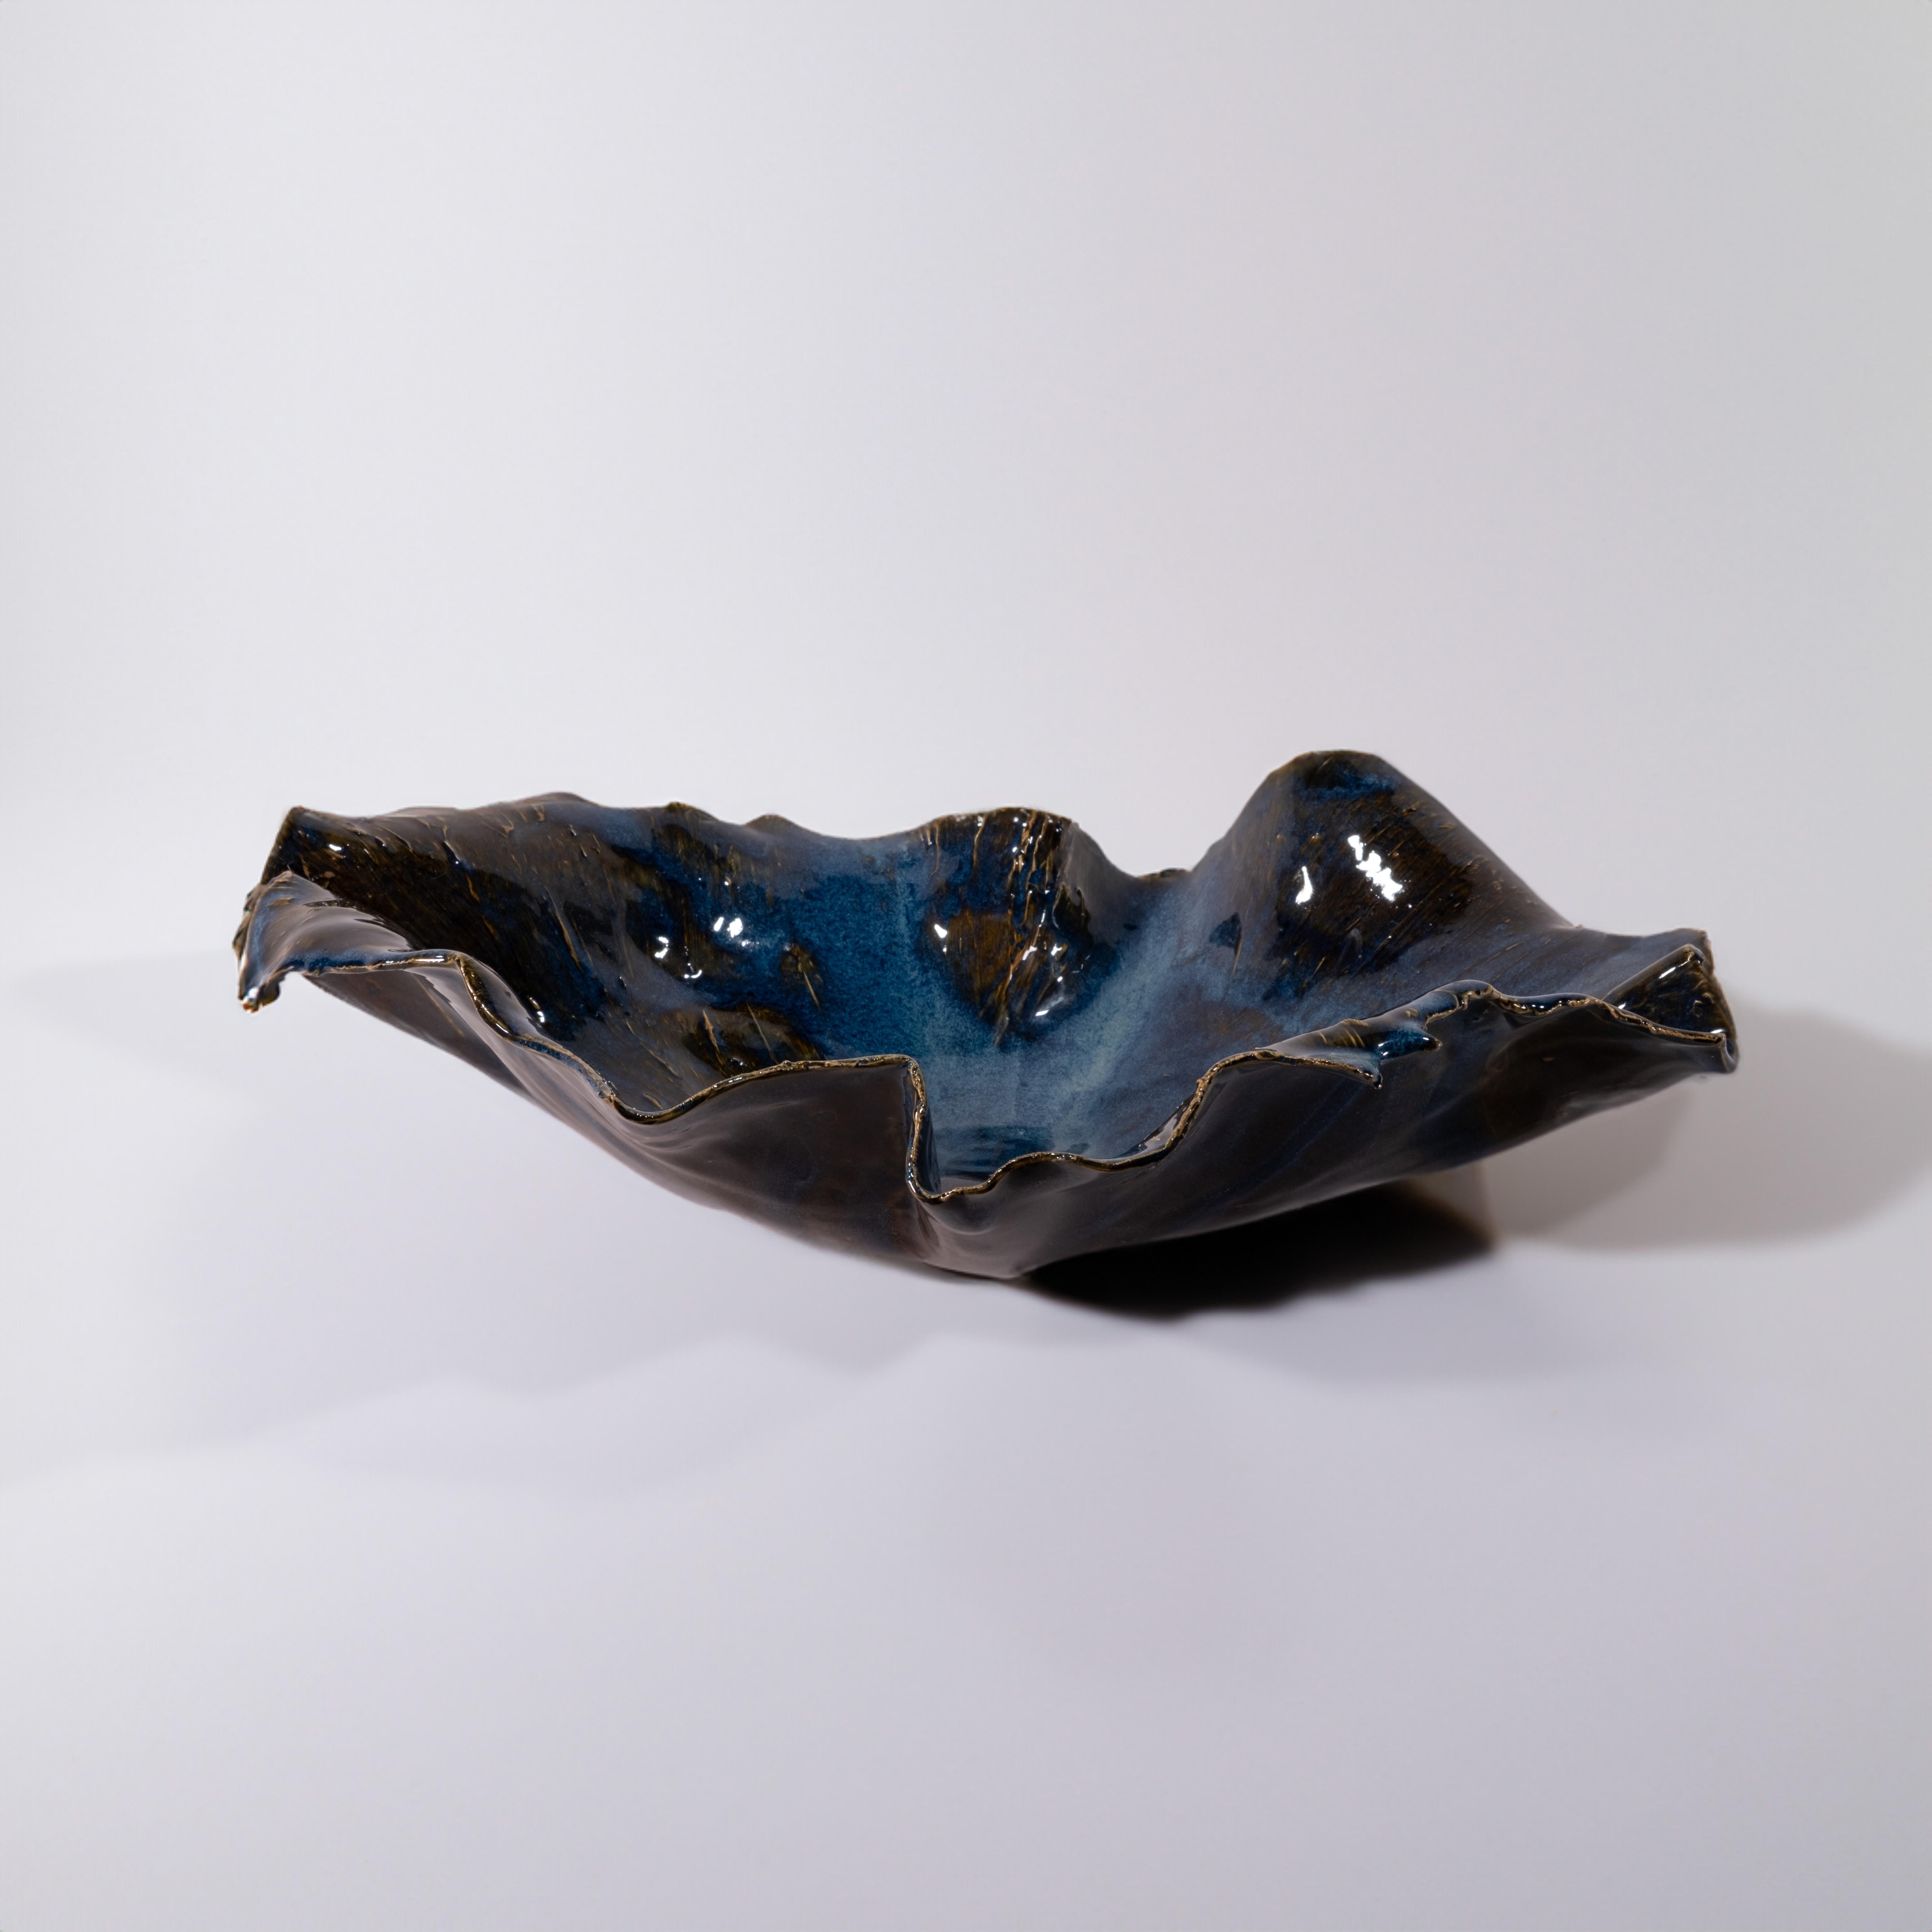 Glazed Blue Ceramic Serving Bowl For Sale